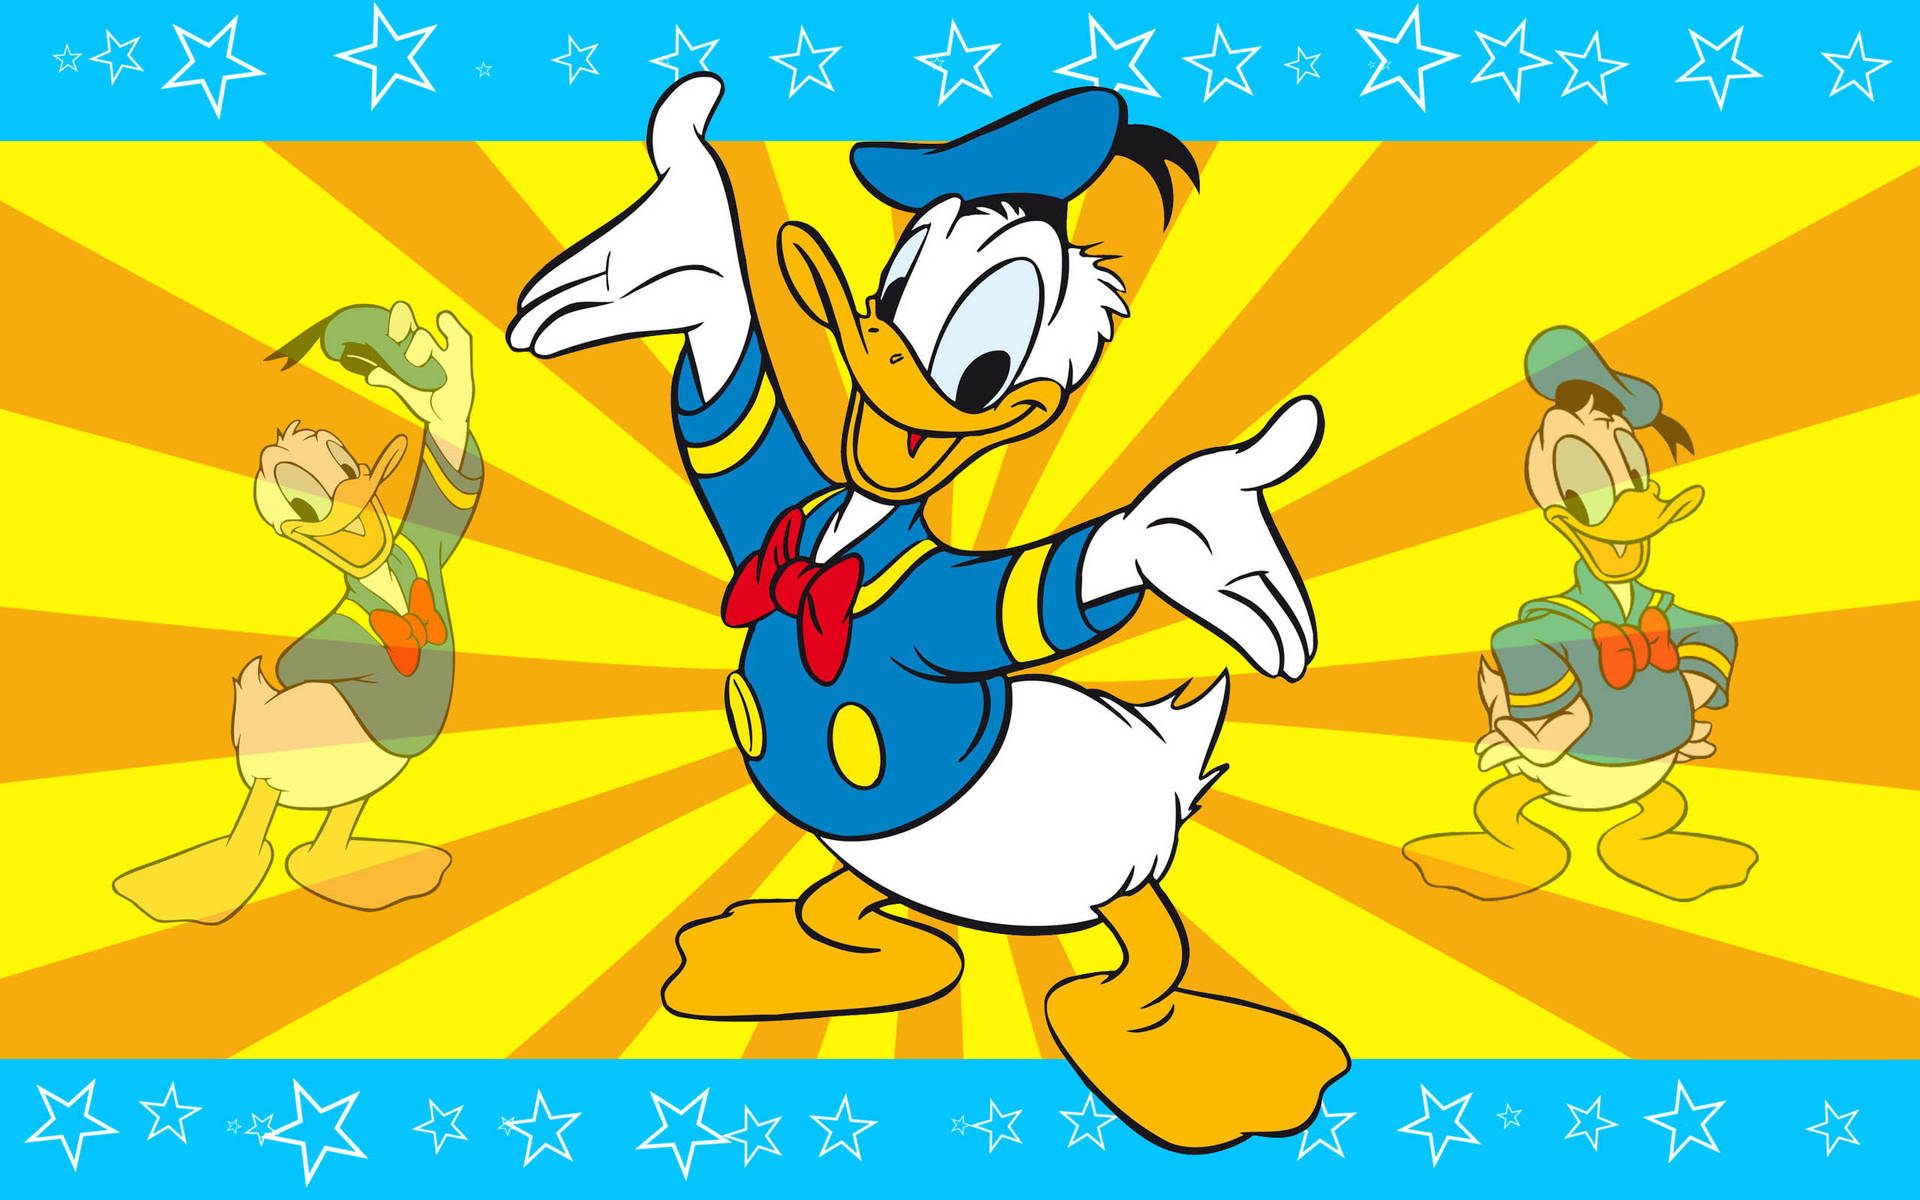 Creative Donald Duck Star Wallpaper